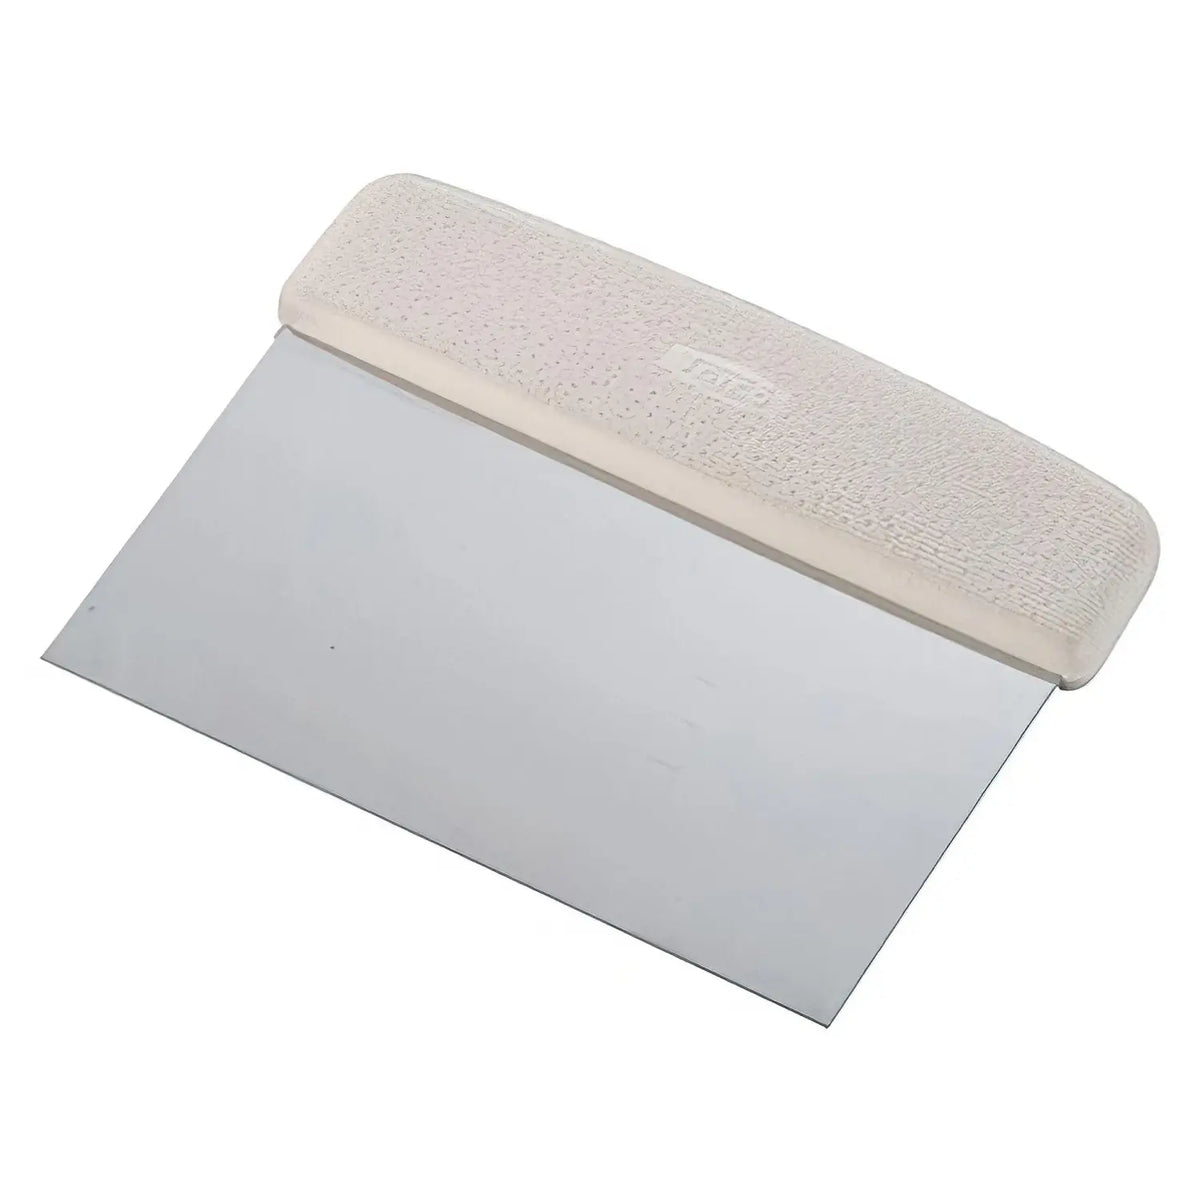 TKG Polyethylene Cutting Board Scraper